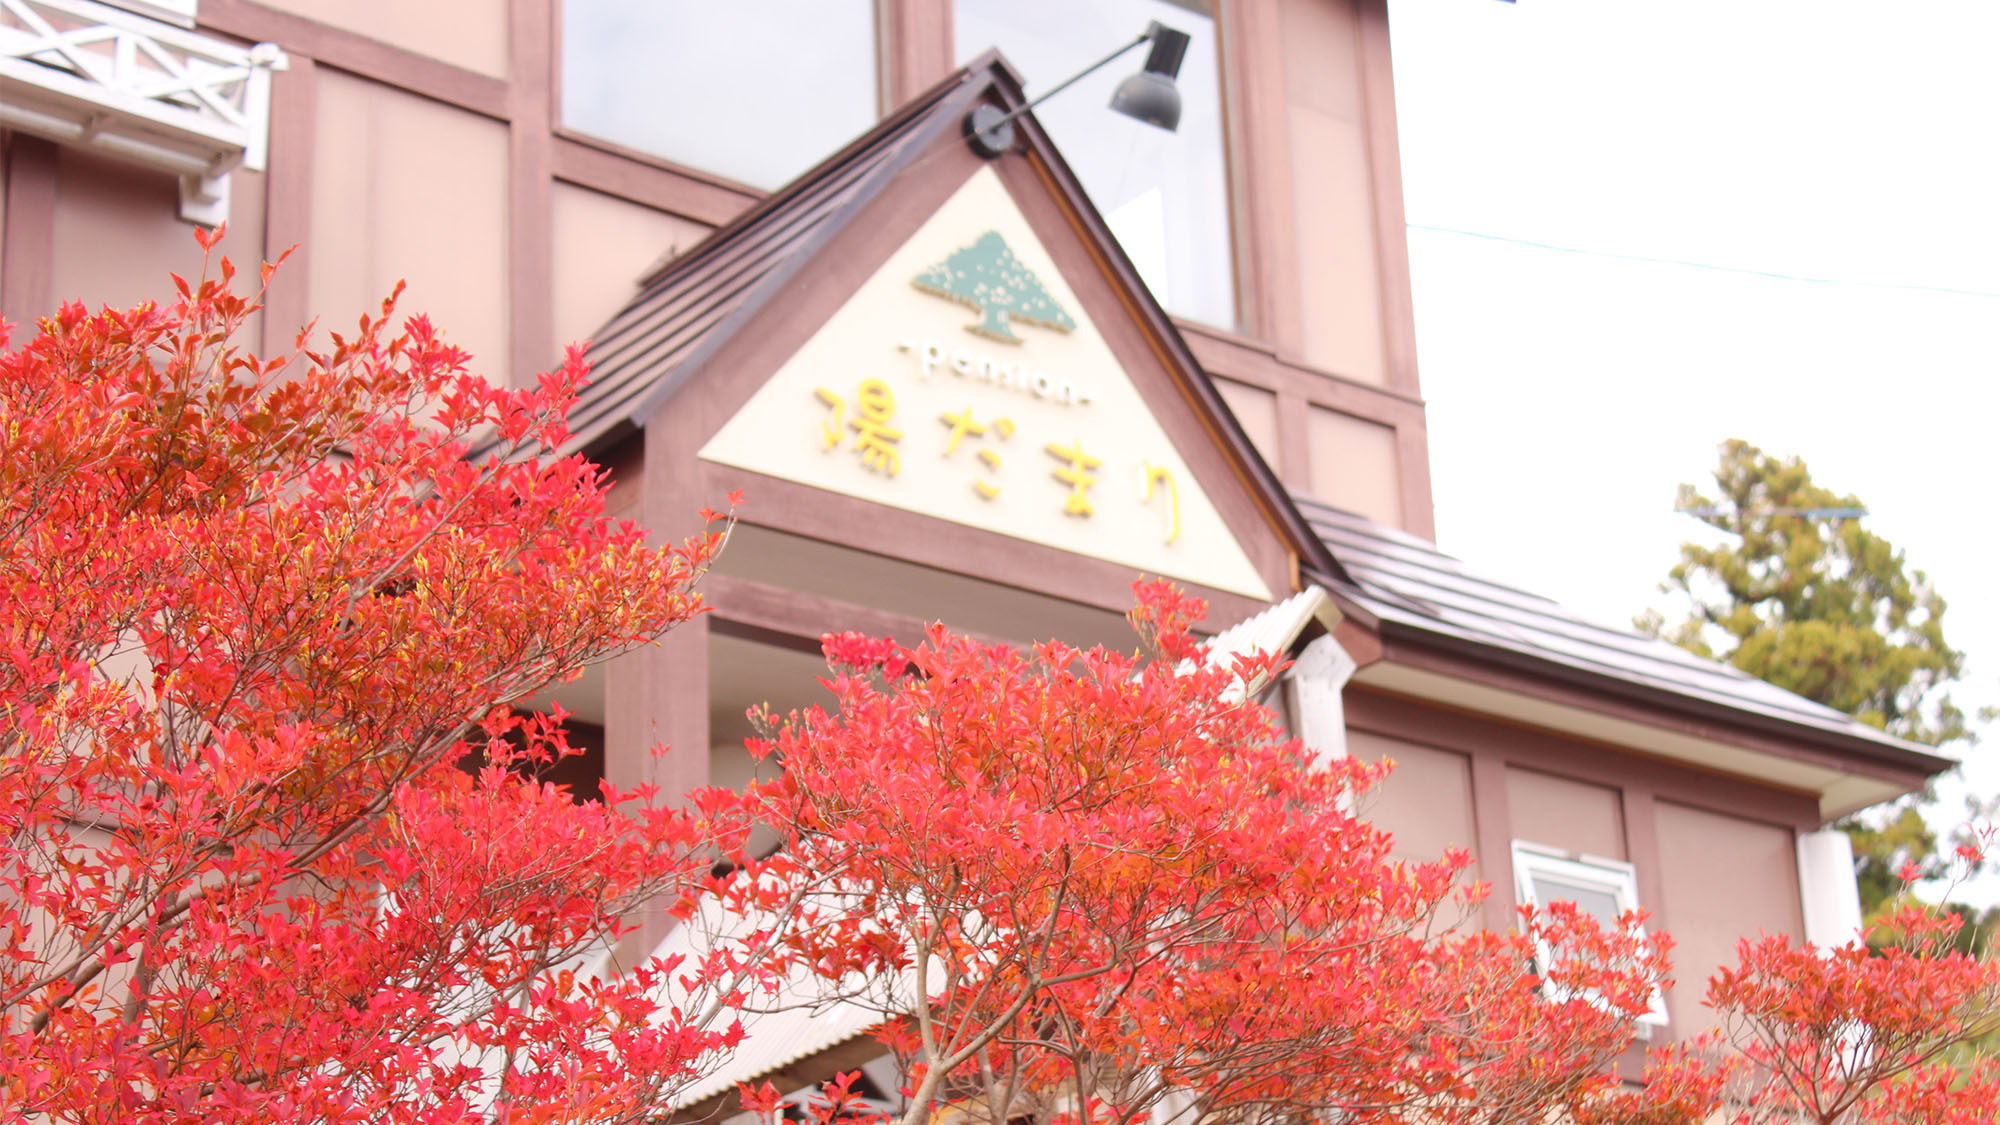 ・【外観・秋】秋には真っ赤な紅葉が当館を彩ります